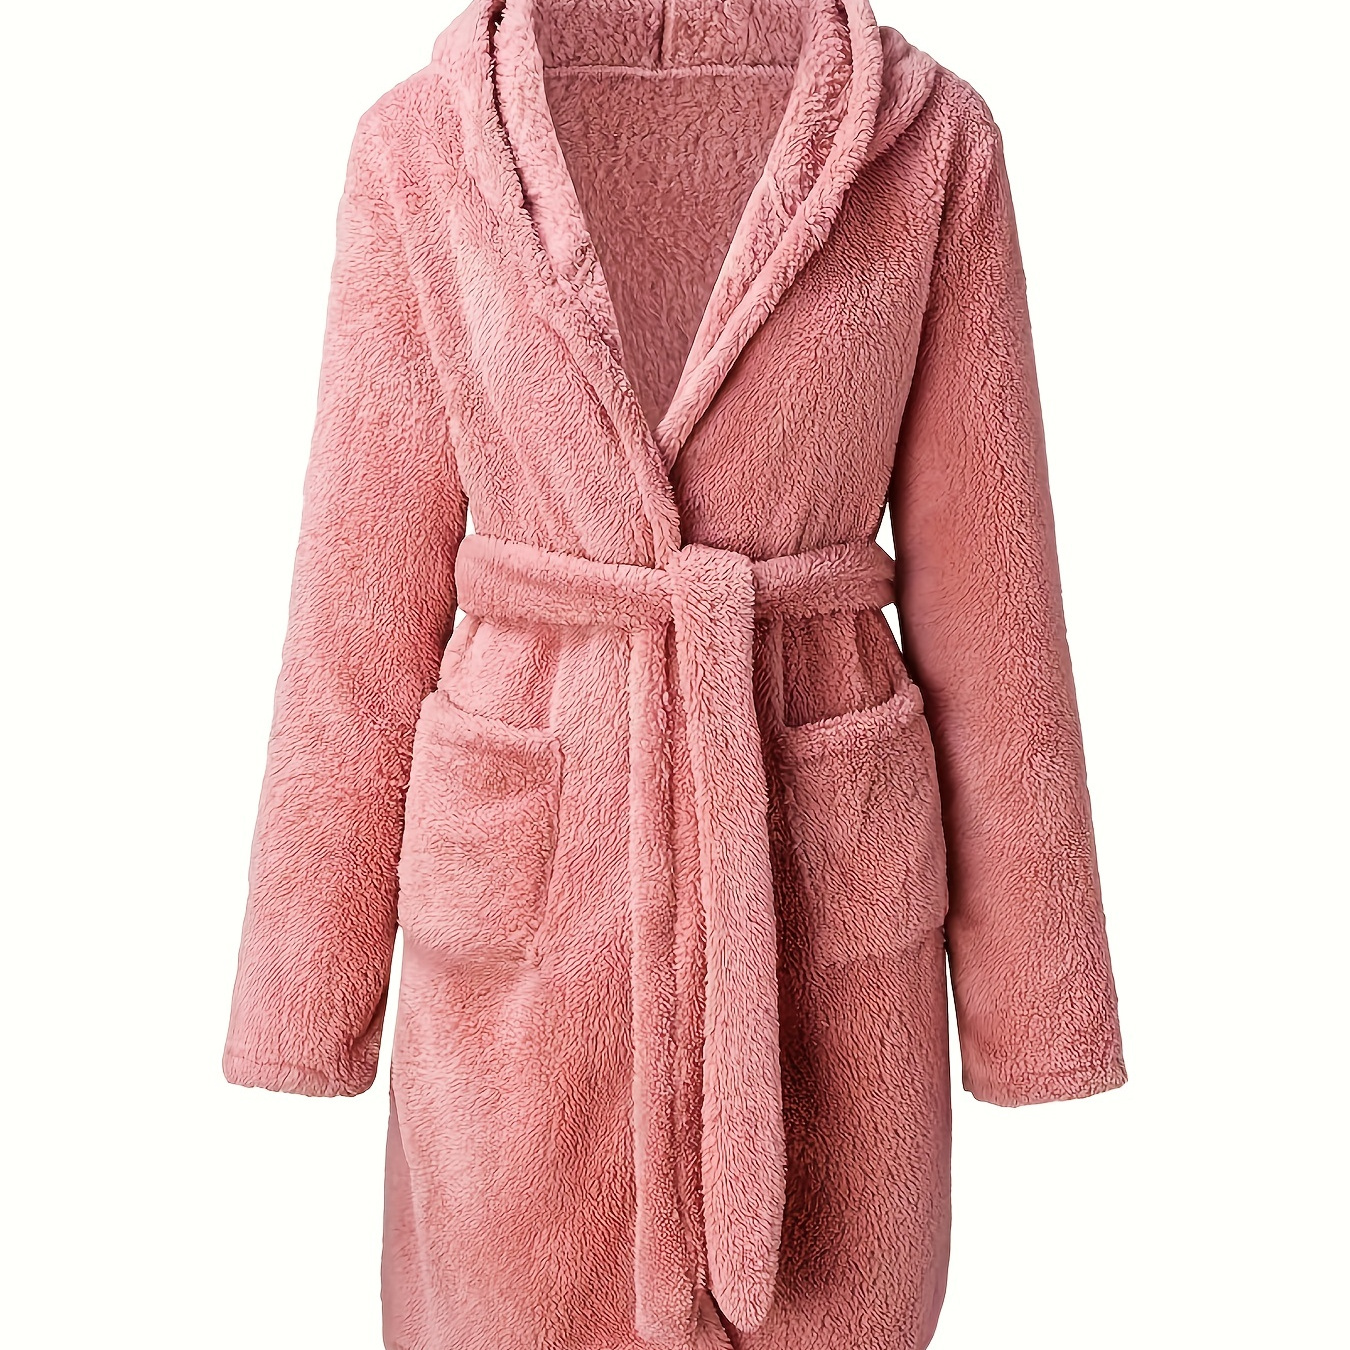 

Solid Fuzzy Hooded Night Robe, Long Sleeve Pocket Robe With Belt, Women's Sleepwear